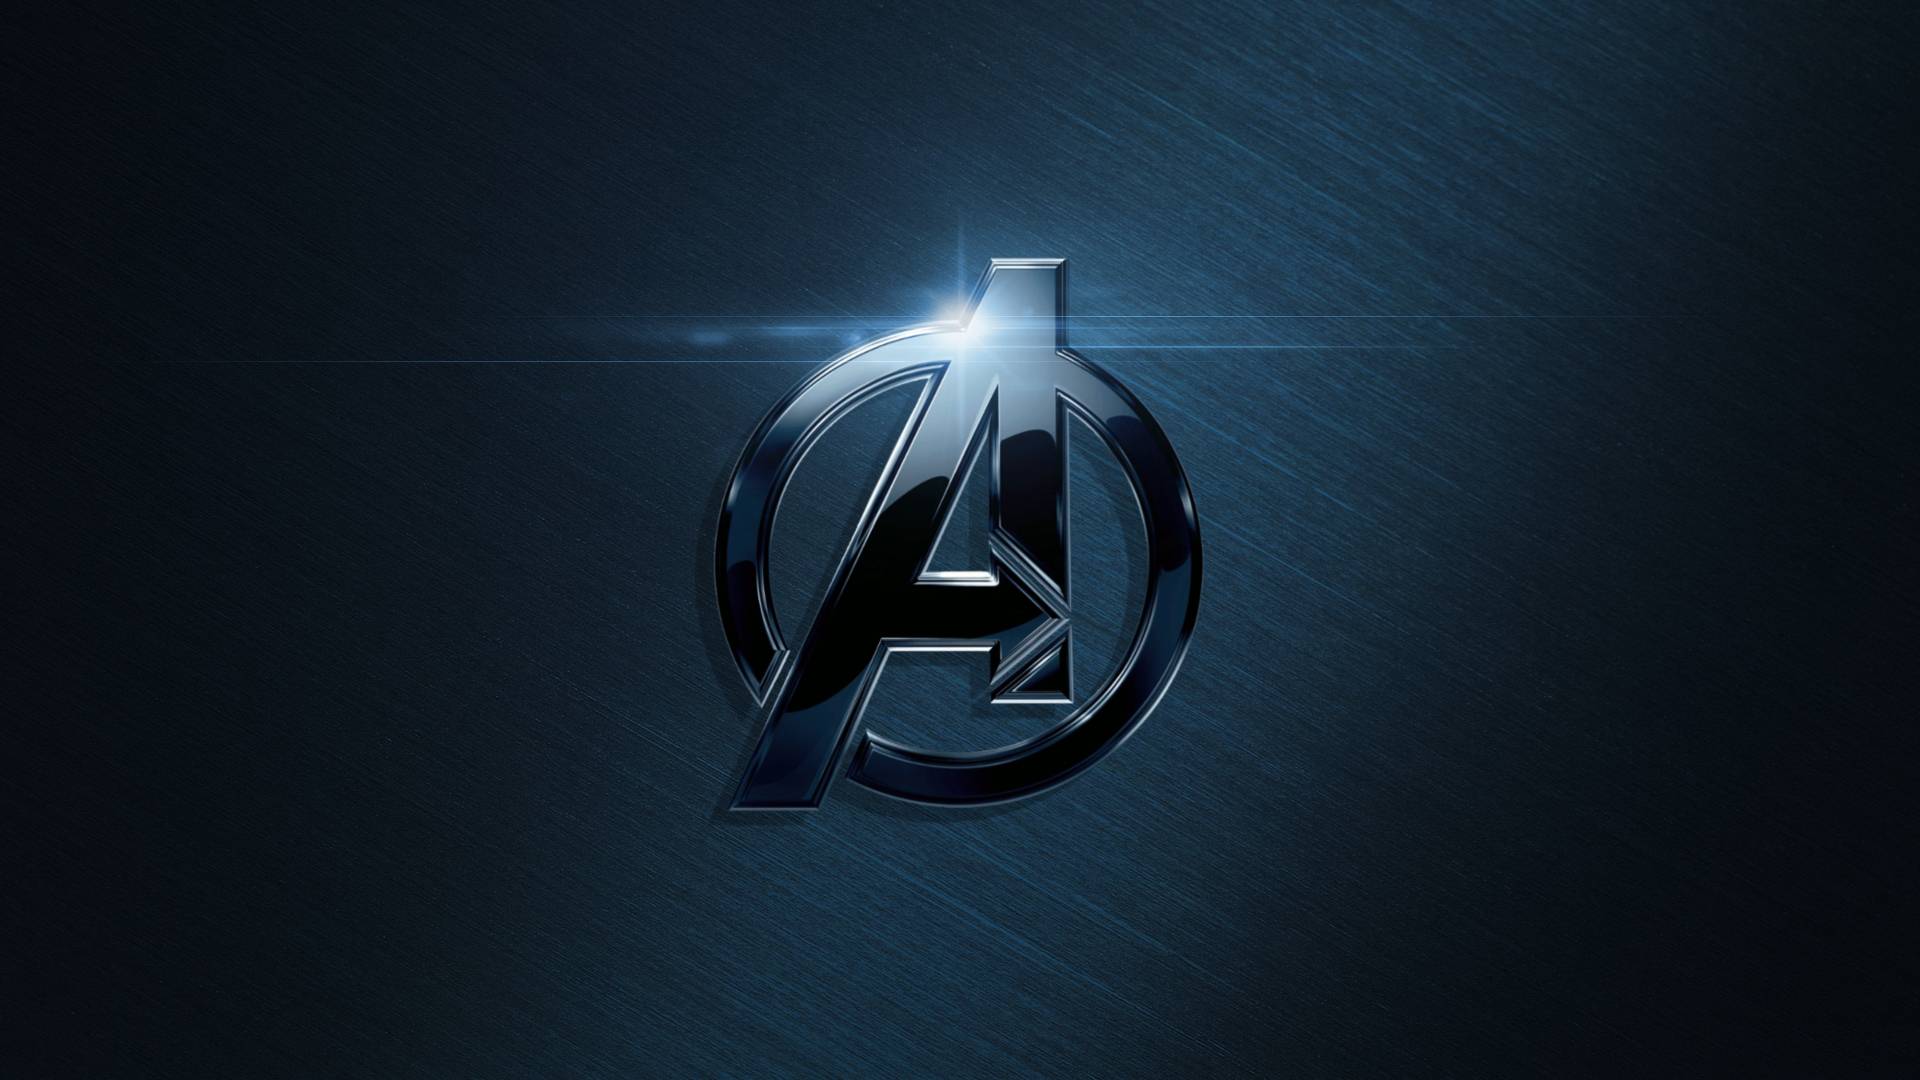 Logo Avengers Wallpapers PixelsTalkNet